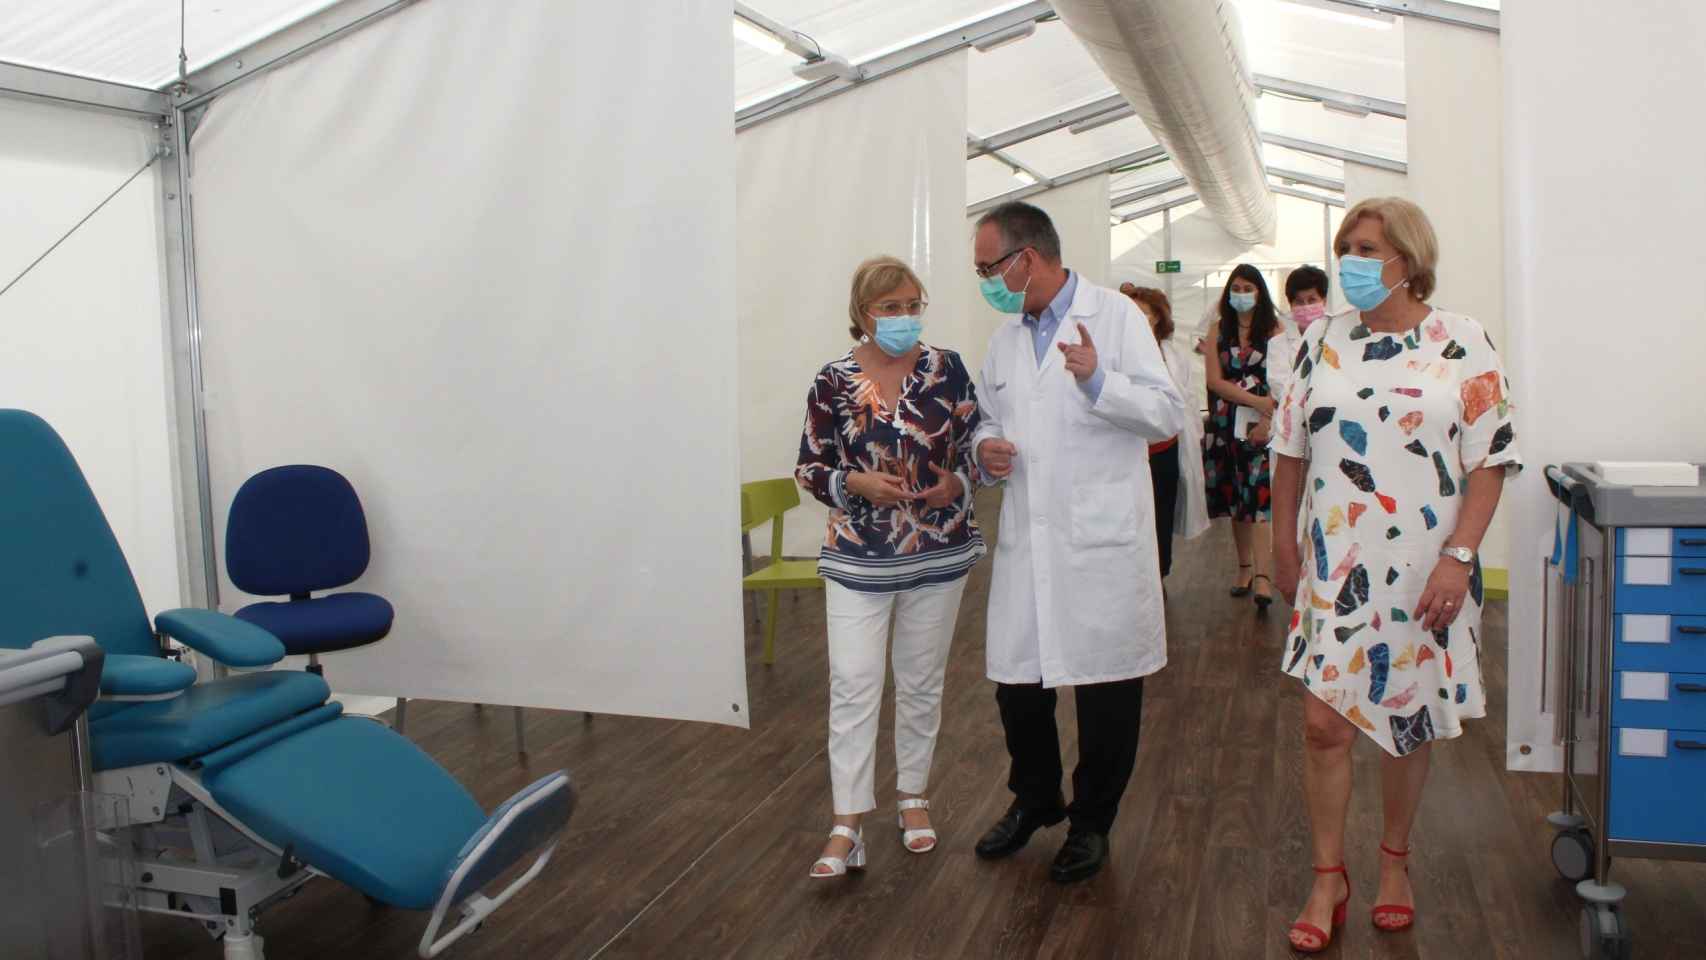 La consellera Ana Barceló en una visita anterior a los centros de vacunación masiva.